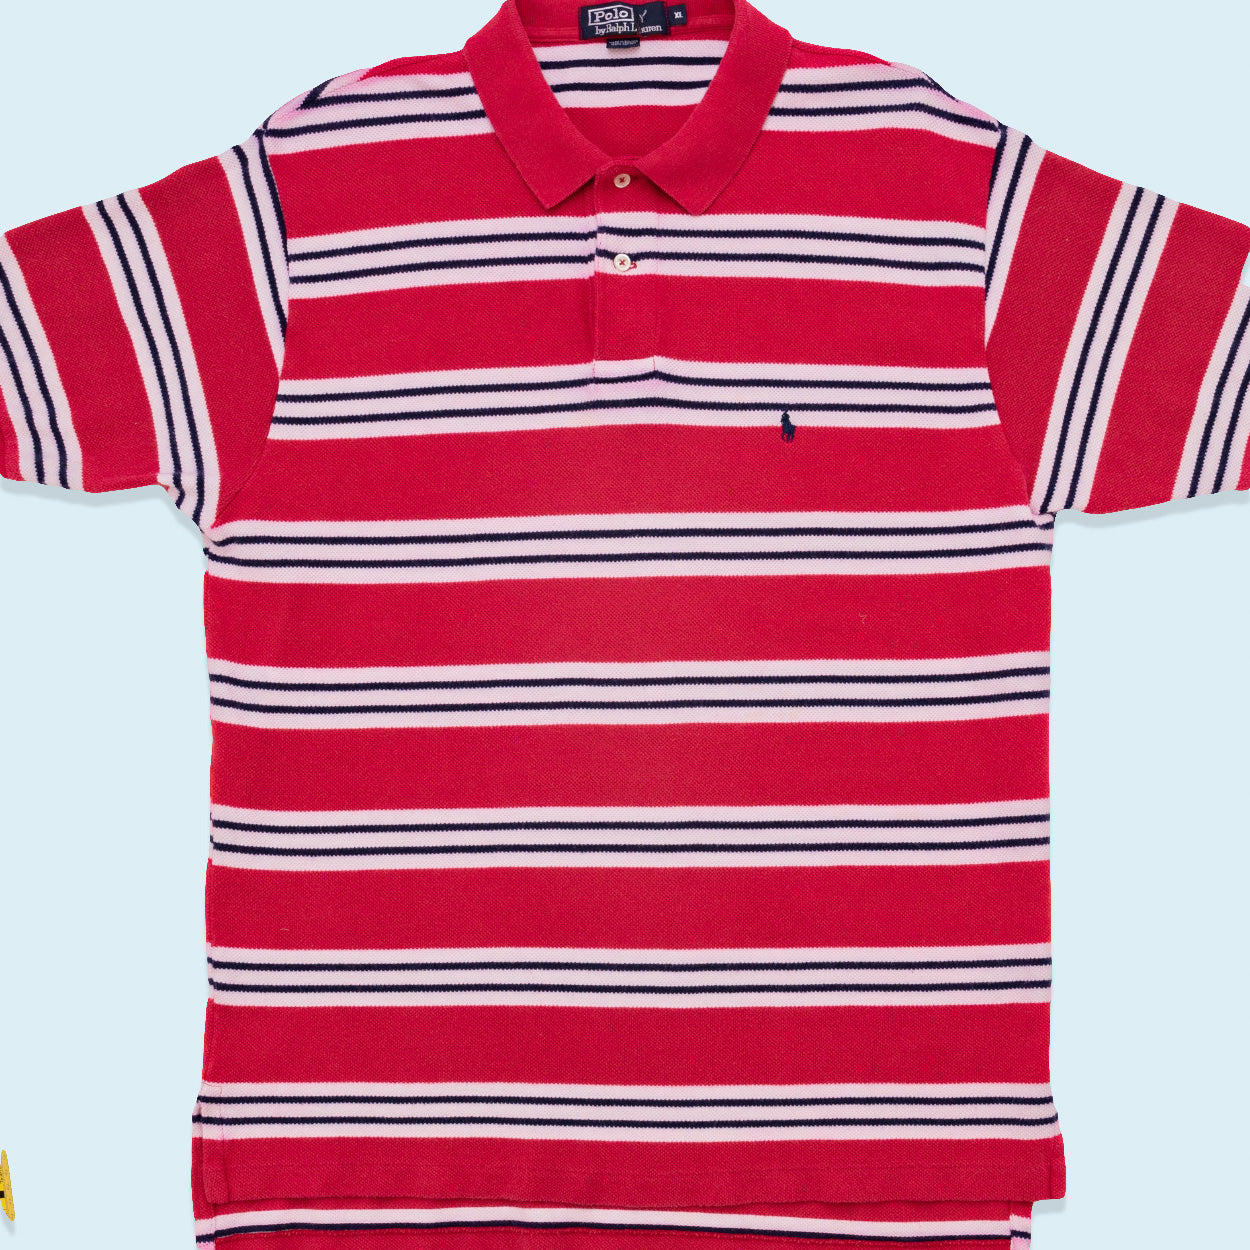 Polo Ralph Lauren Poloshirt, rot/weiß, XL/2XL dick